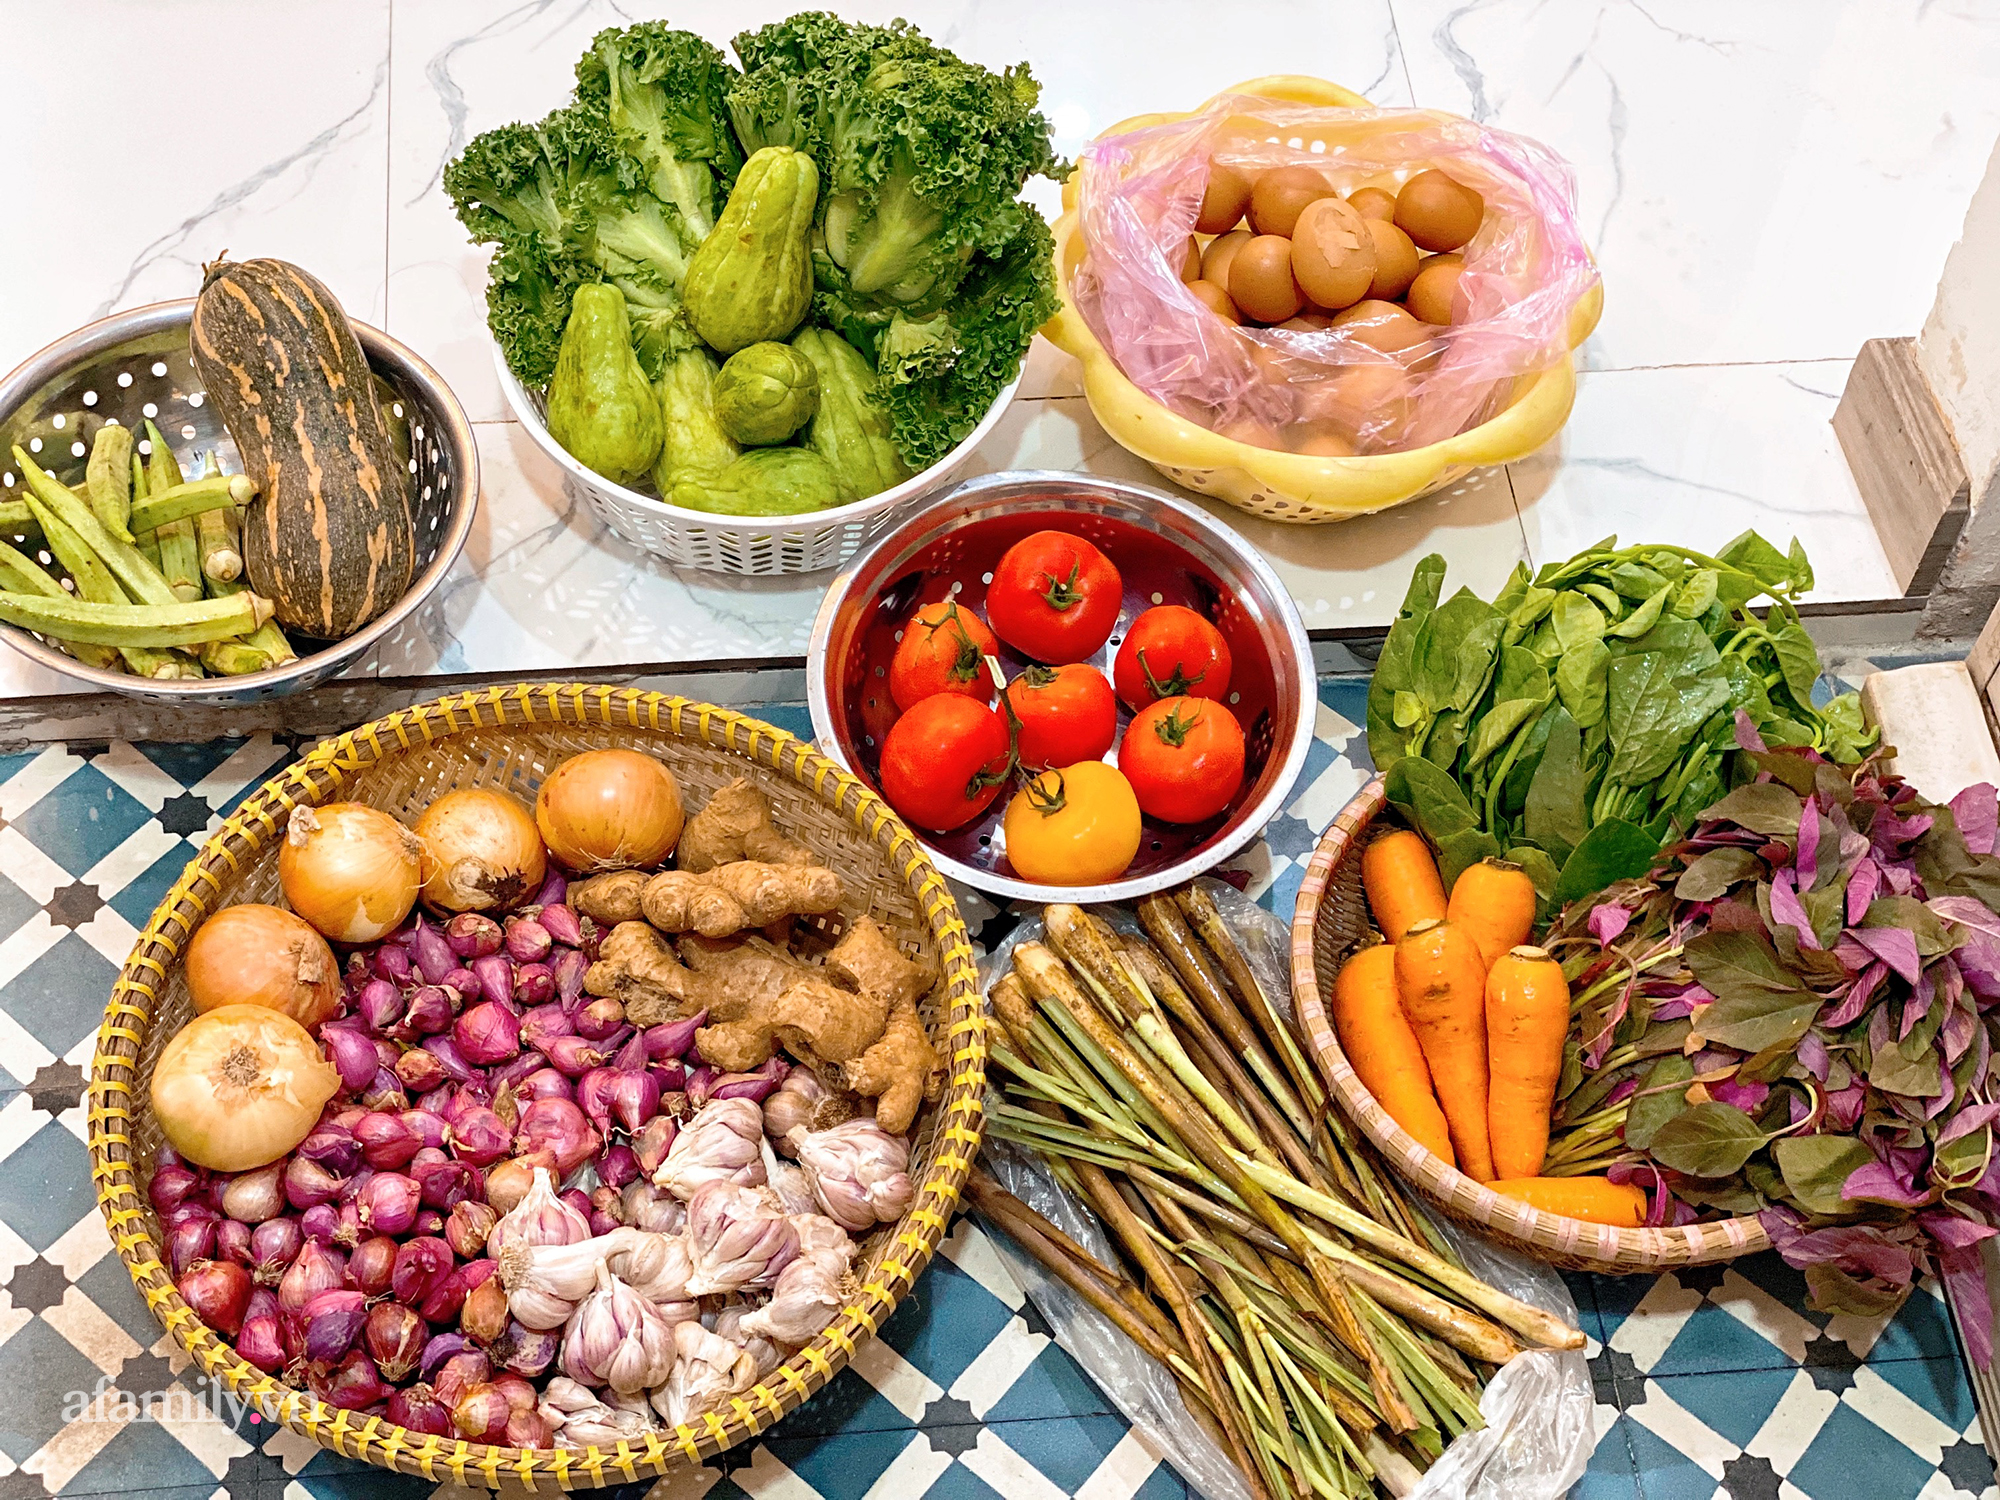 Cọng hành, bó cải bỗng thành "của" quý của nhiều gia đình tại Sài Gòn, thay đổi luôn cách dùng rau thịt trong mỗi bữa ăn! - Ảnh 1.